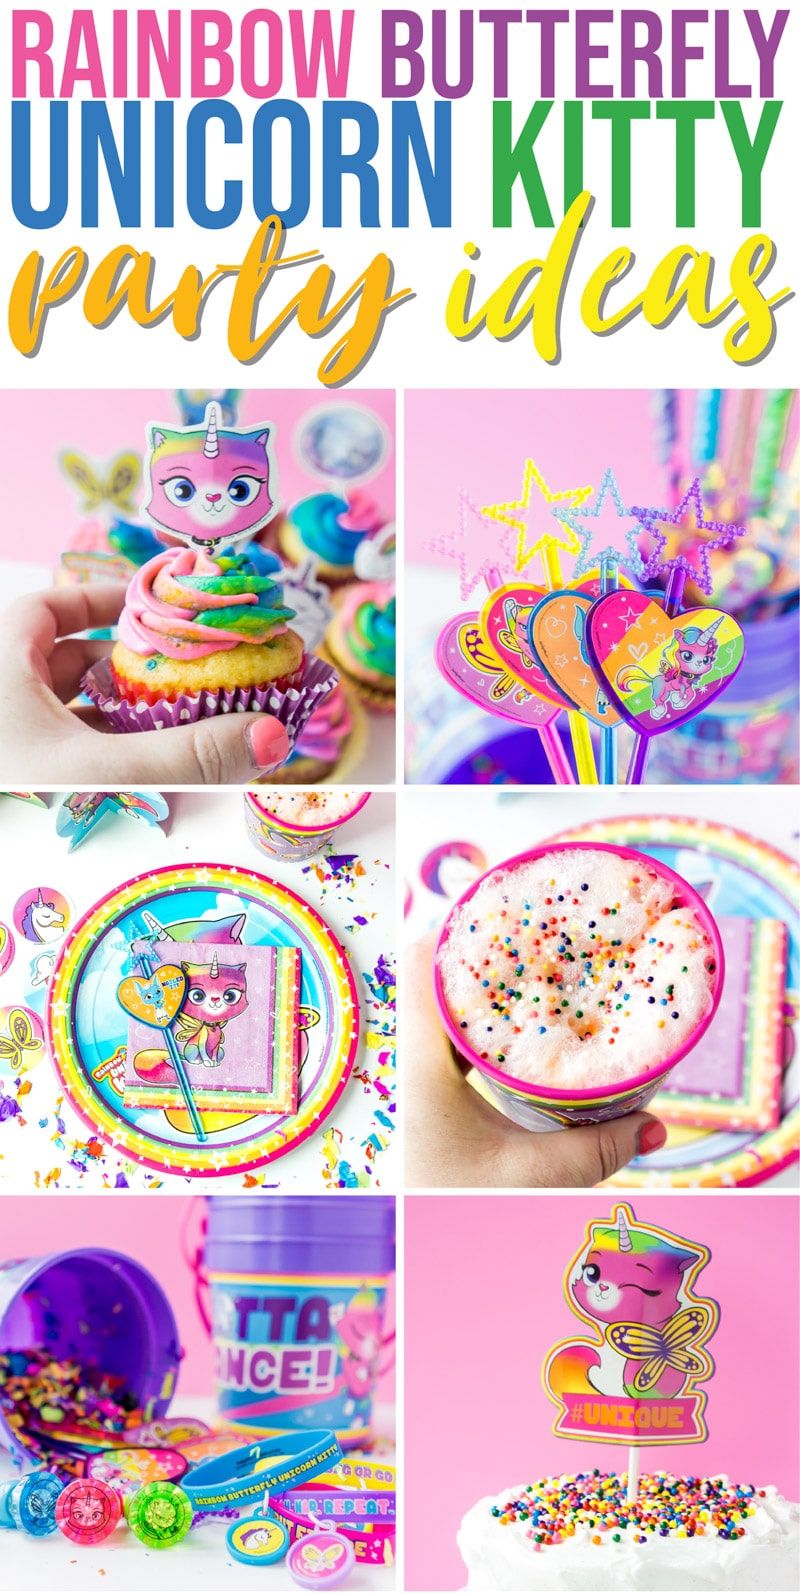 Les millors idees de festa de gatets unicorn papallona arc de Sant Martí! Tot el que necessiteu: menjar, decoració, favors i molt més per a una celebració de colors.